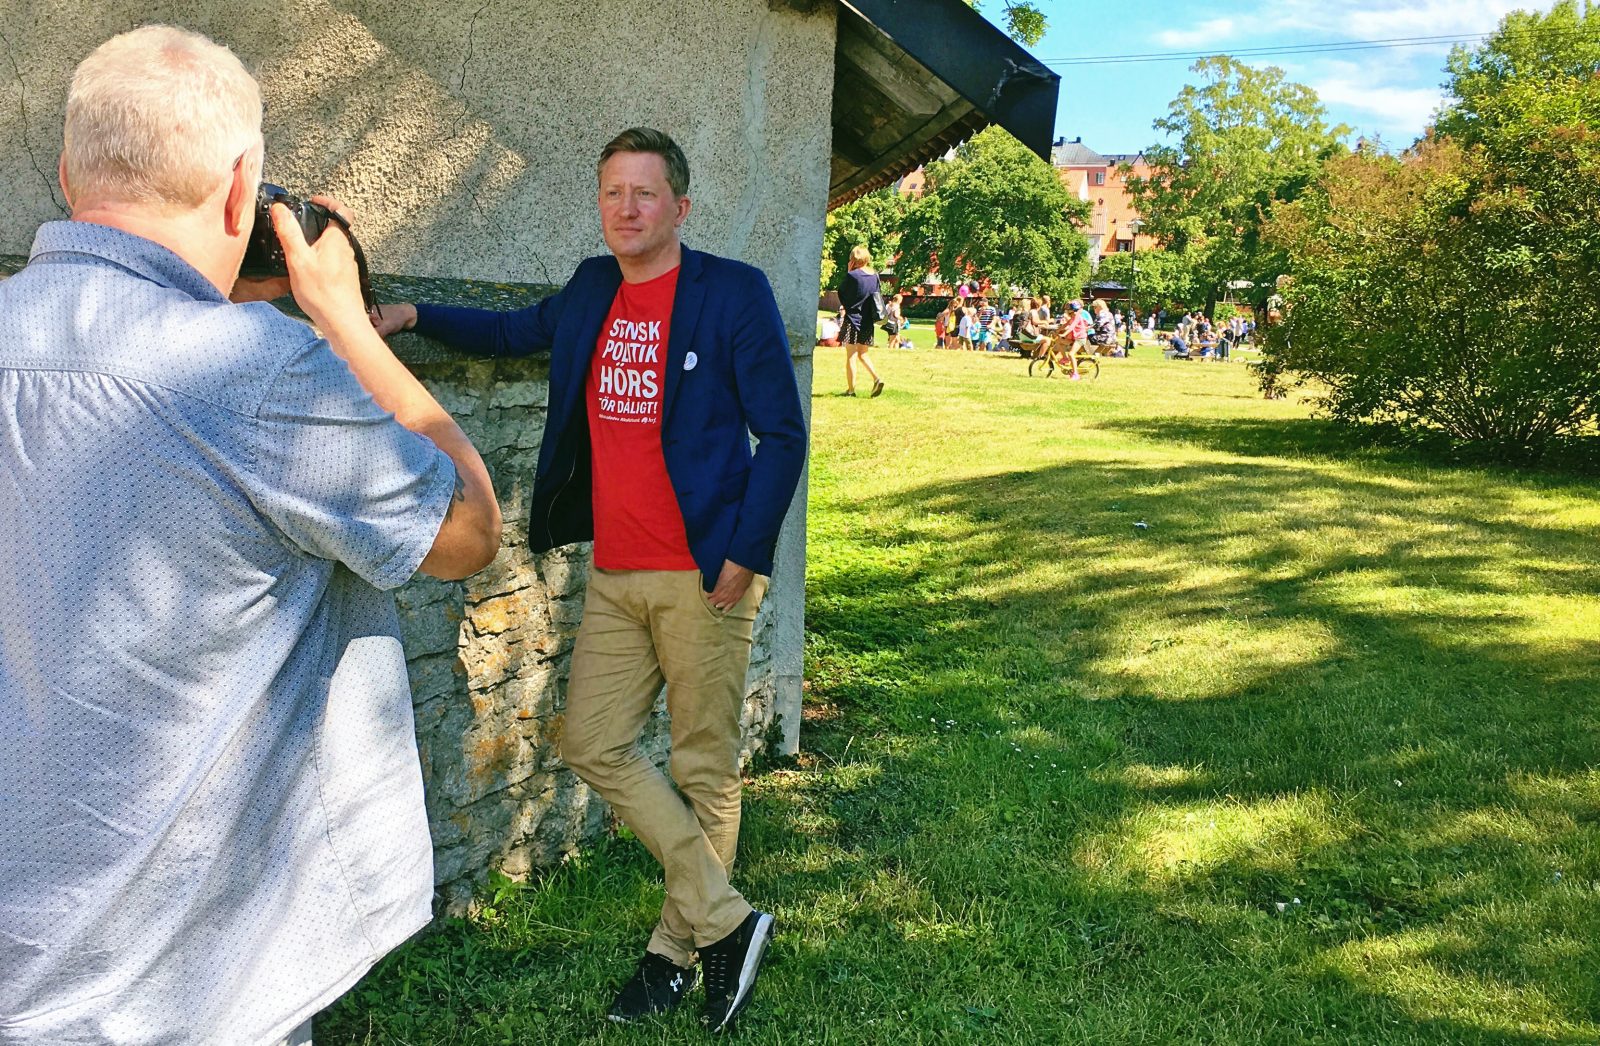 HRfs förbundsordförande Mattias Lundekvam står intill Almedalsparken i Visby och blir fotograferad av reporter från Barometern/OT.